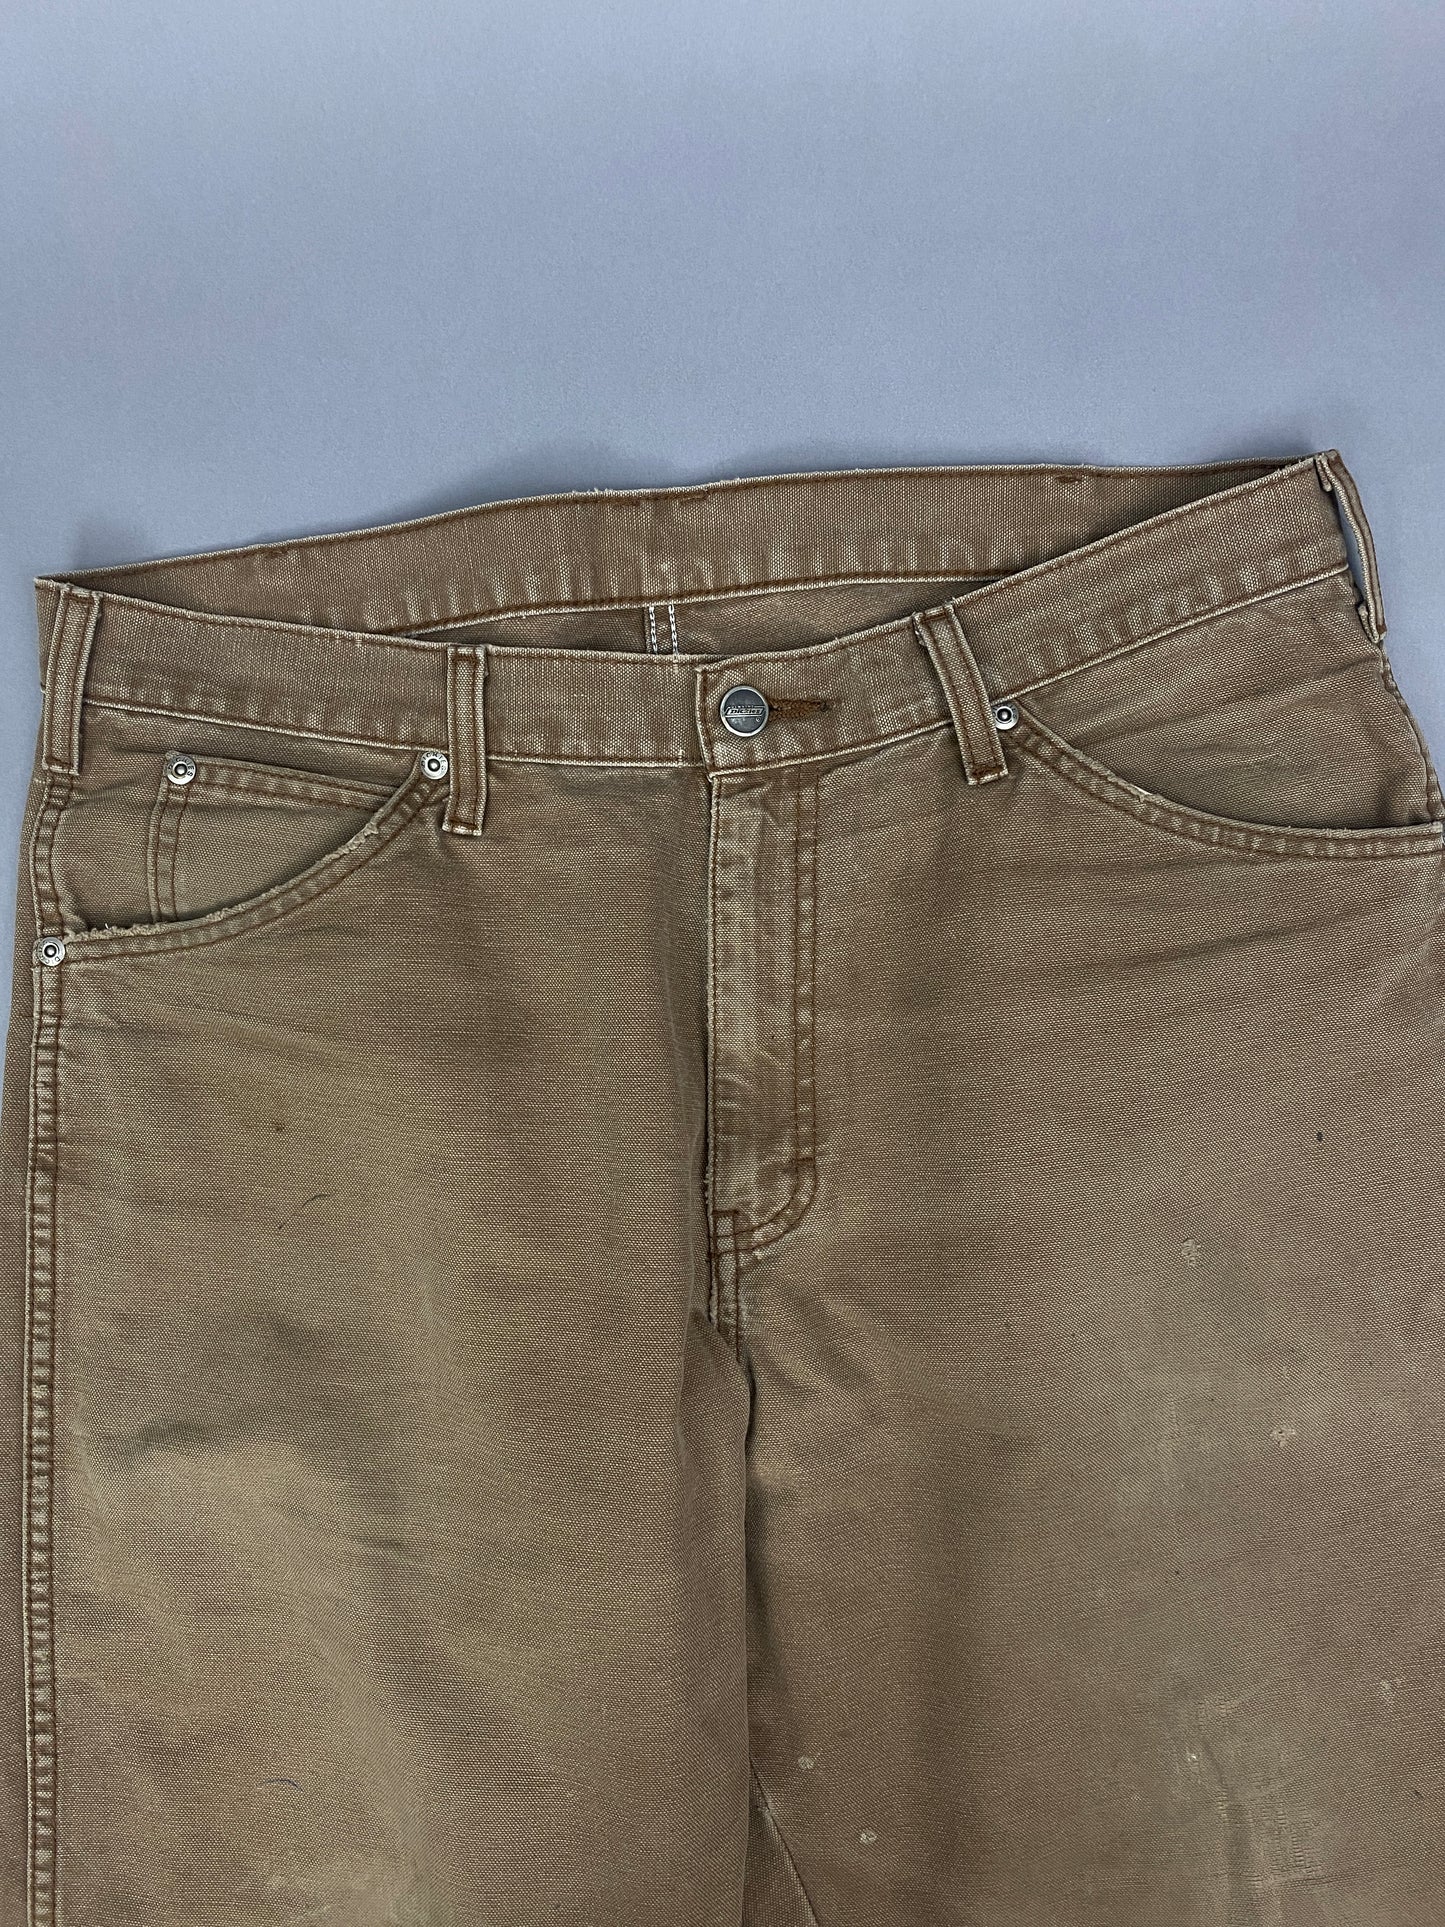 Dickies Vintage Carpenter Jeans - 34 x 32